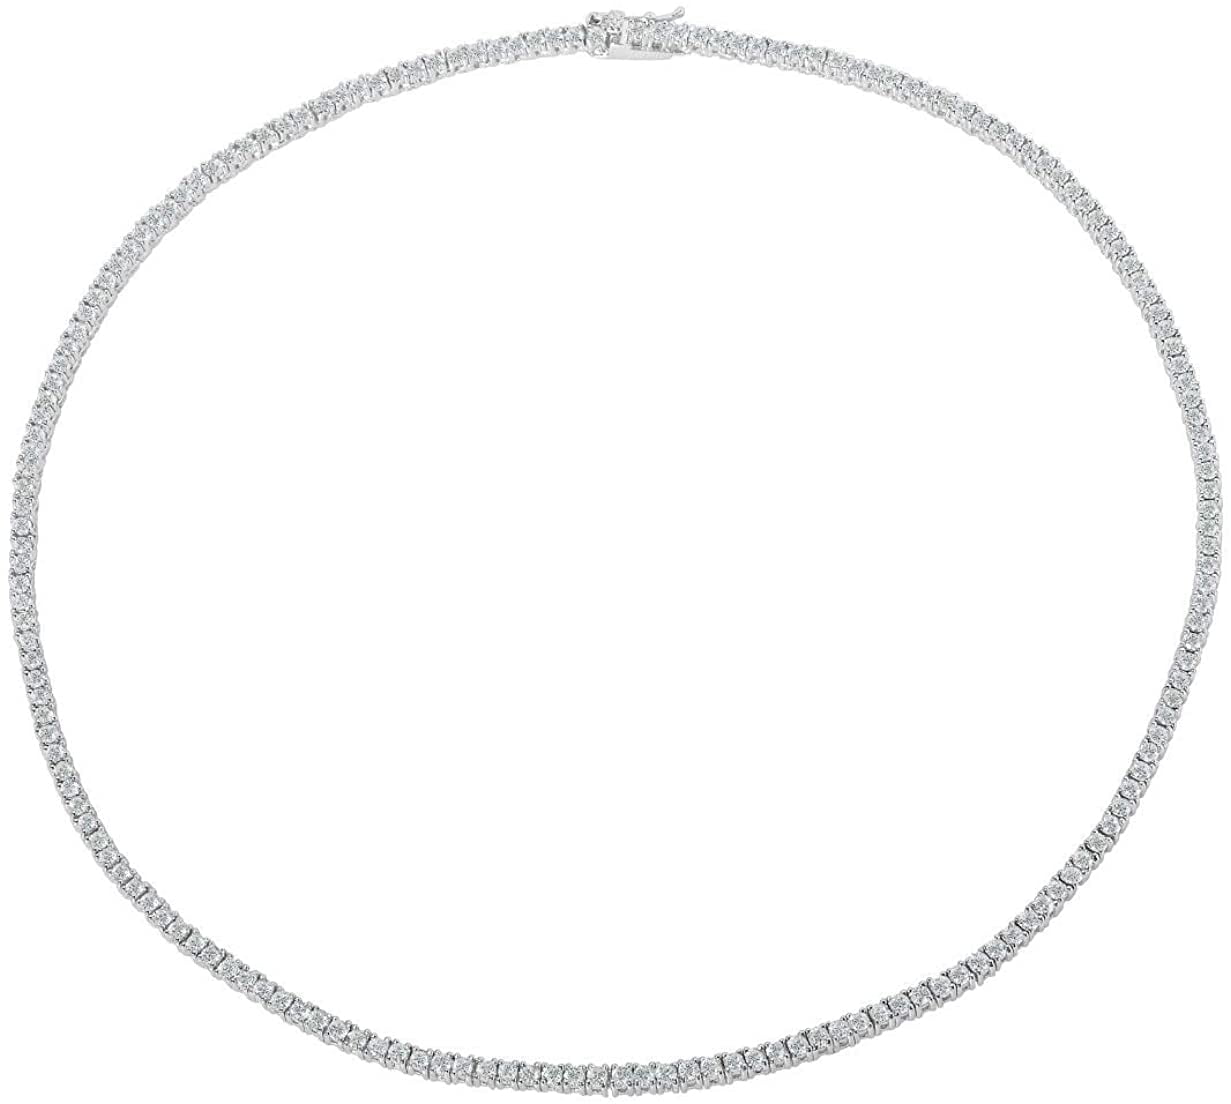 25481円 2022年のクリスマスの特別な衣装 Classic アクセサリー ネックレス Sterling Silver Round 3mm and 6mm CZ Tennis Necklace